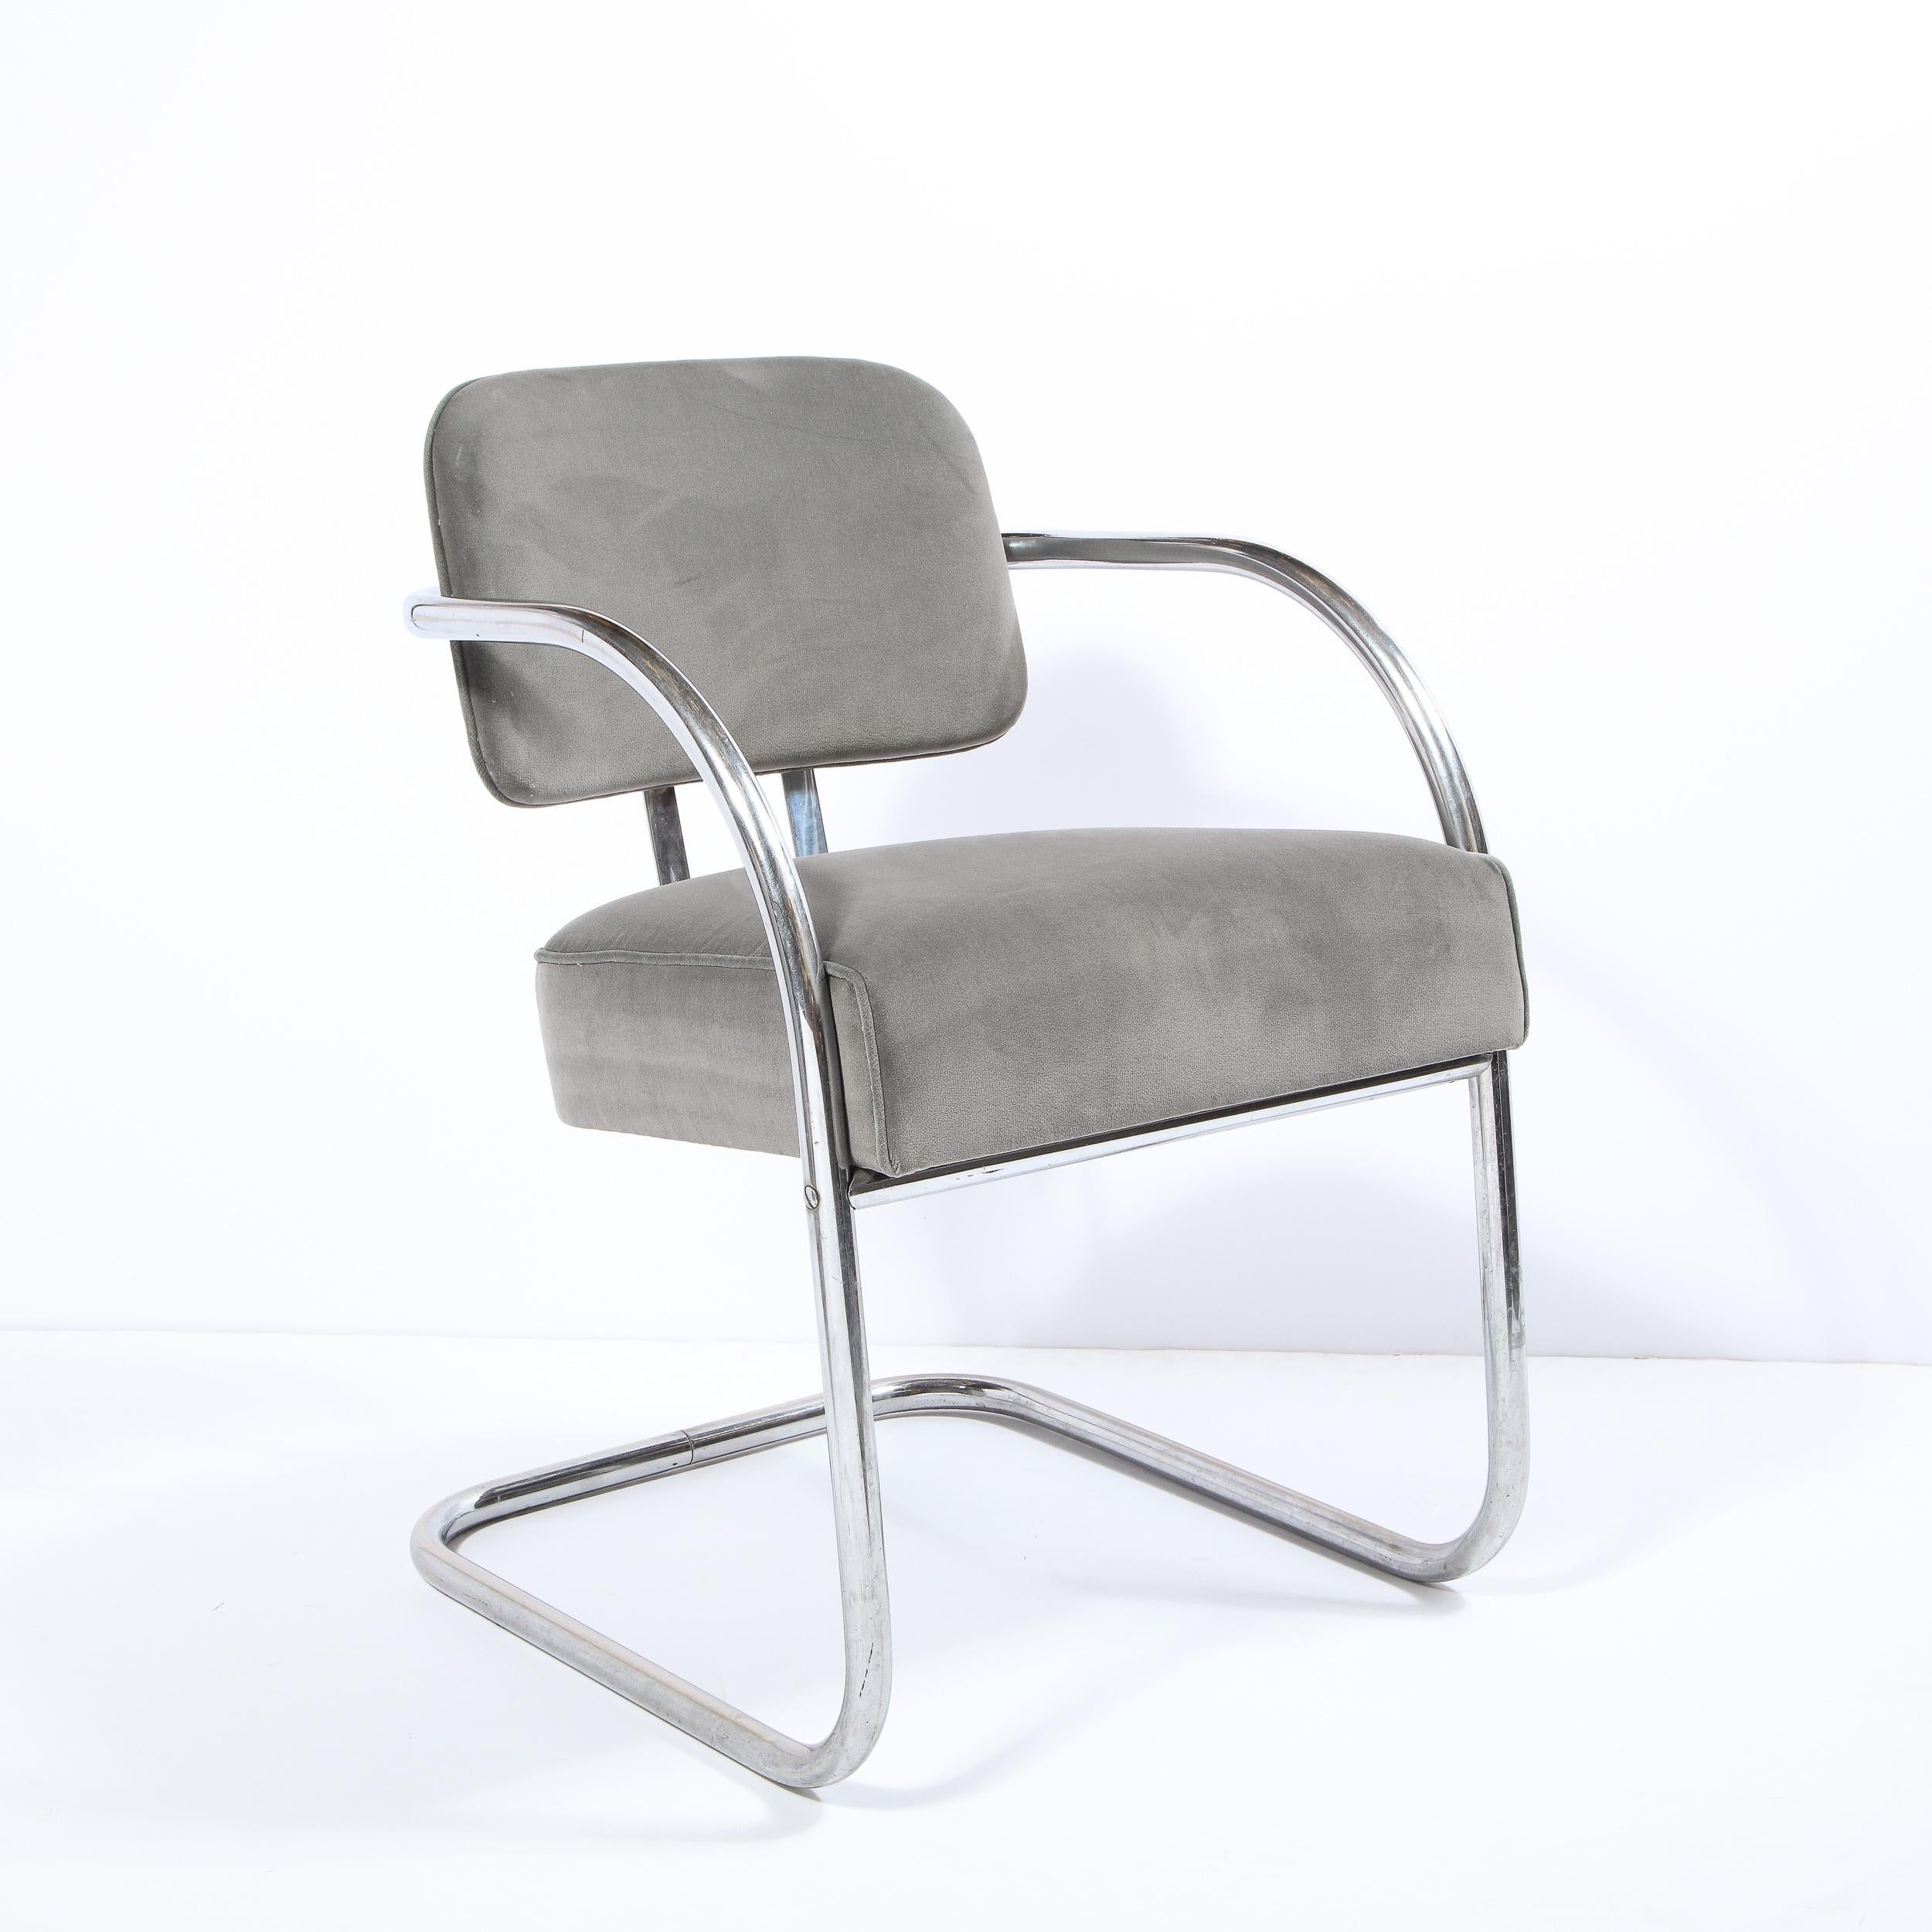 Cette chaise d'appoint sophistiquée de l'âge de la machine Art Déco a été réalisée aux États-Unis vers 1935. Il présente une structure en aluminium plié tubulaire subtilement en porte-à-faux avec un siège à dossier flottant, des bras profilés et un